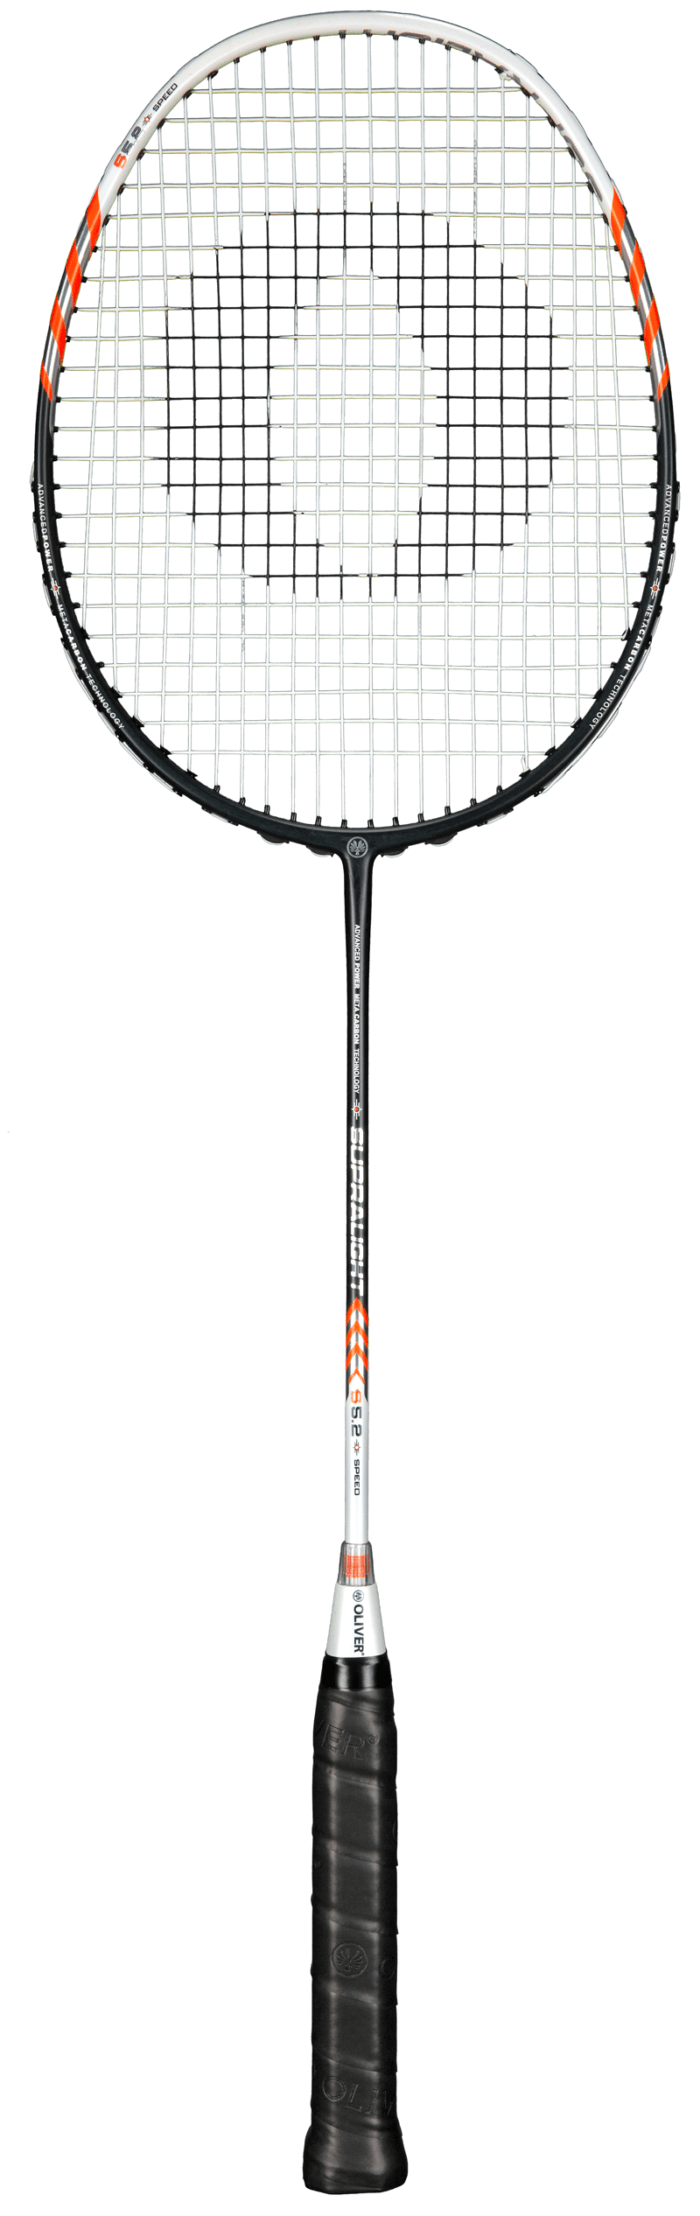 Supralight-S5-2 Badminton racket